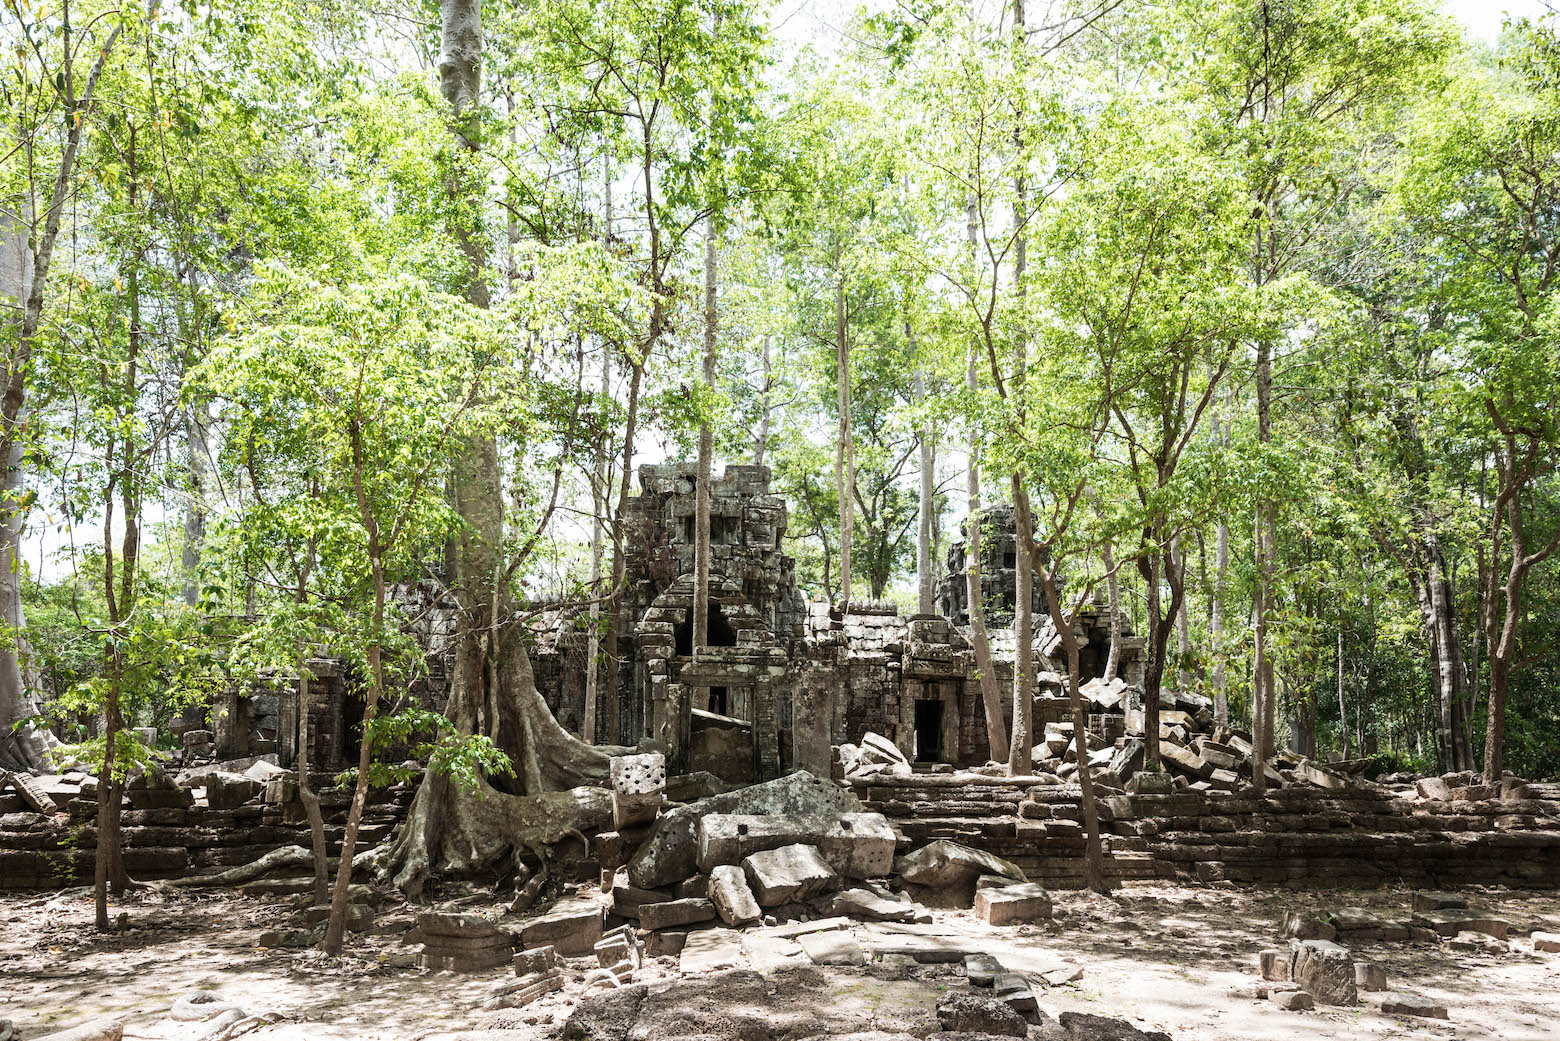 Cambodia Temples